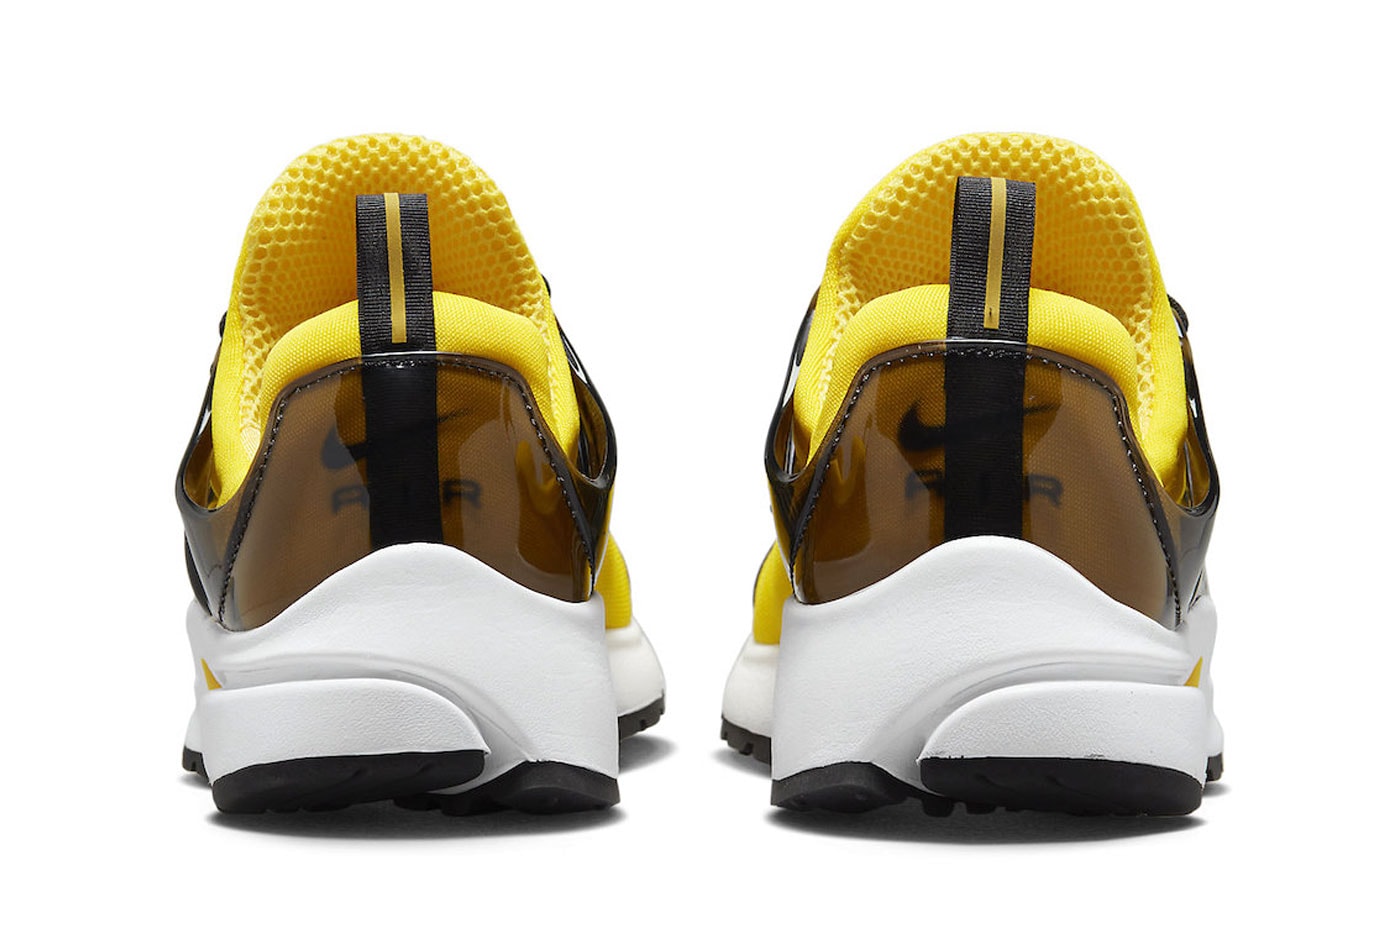 Nike Air Presto tour yellow black white fd0034 700 semi translucent plastic 135 usd release info date price